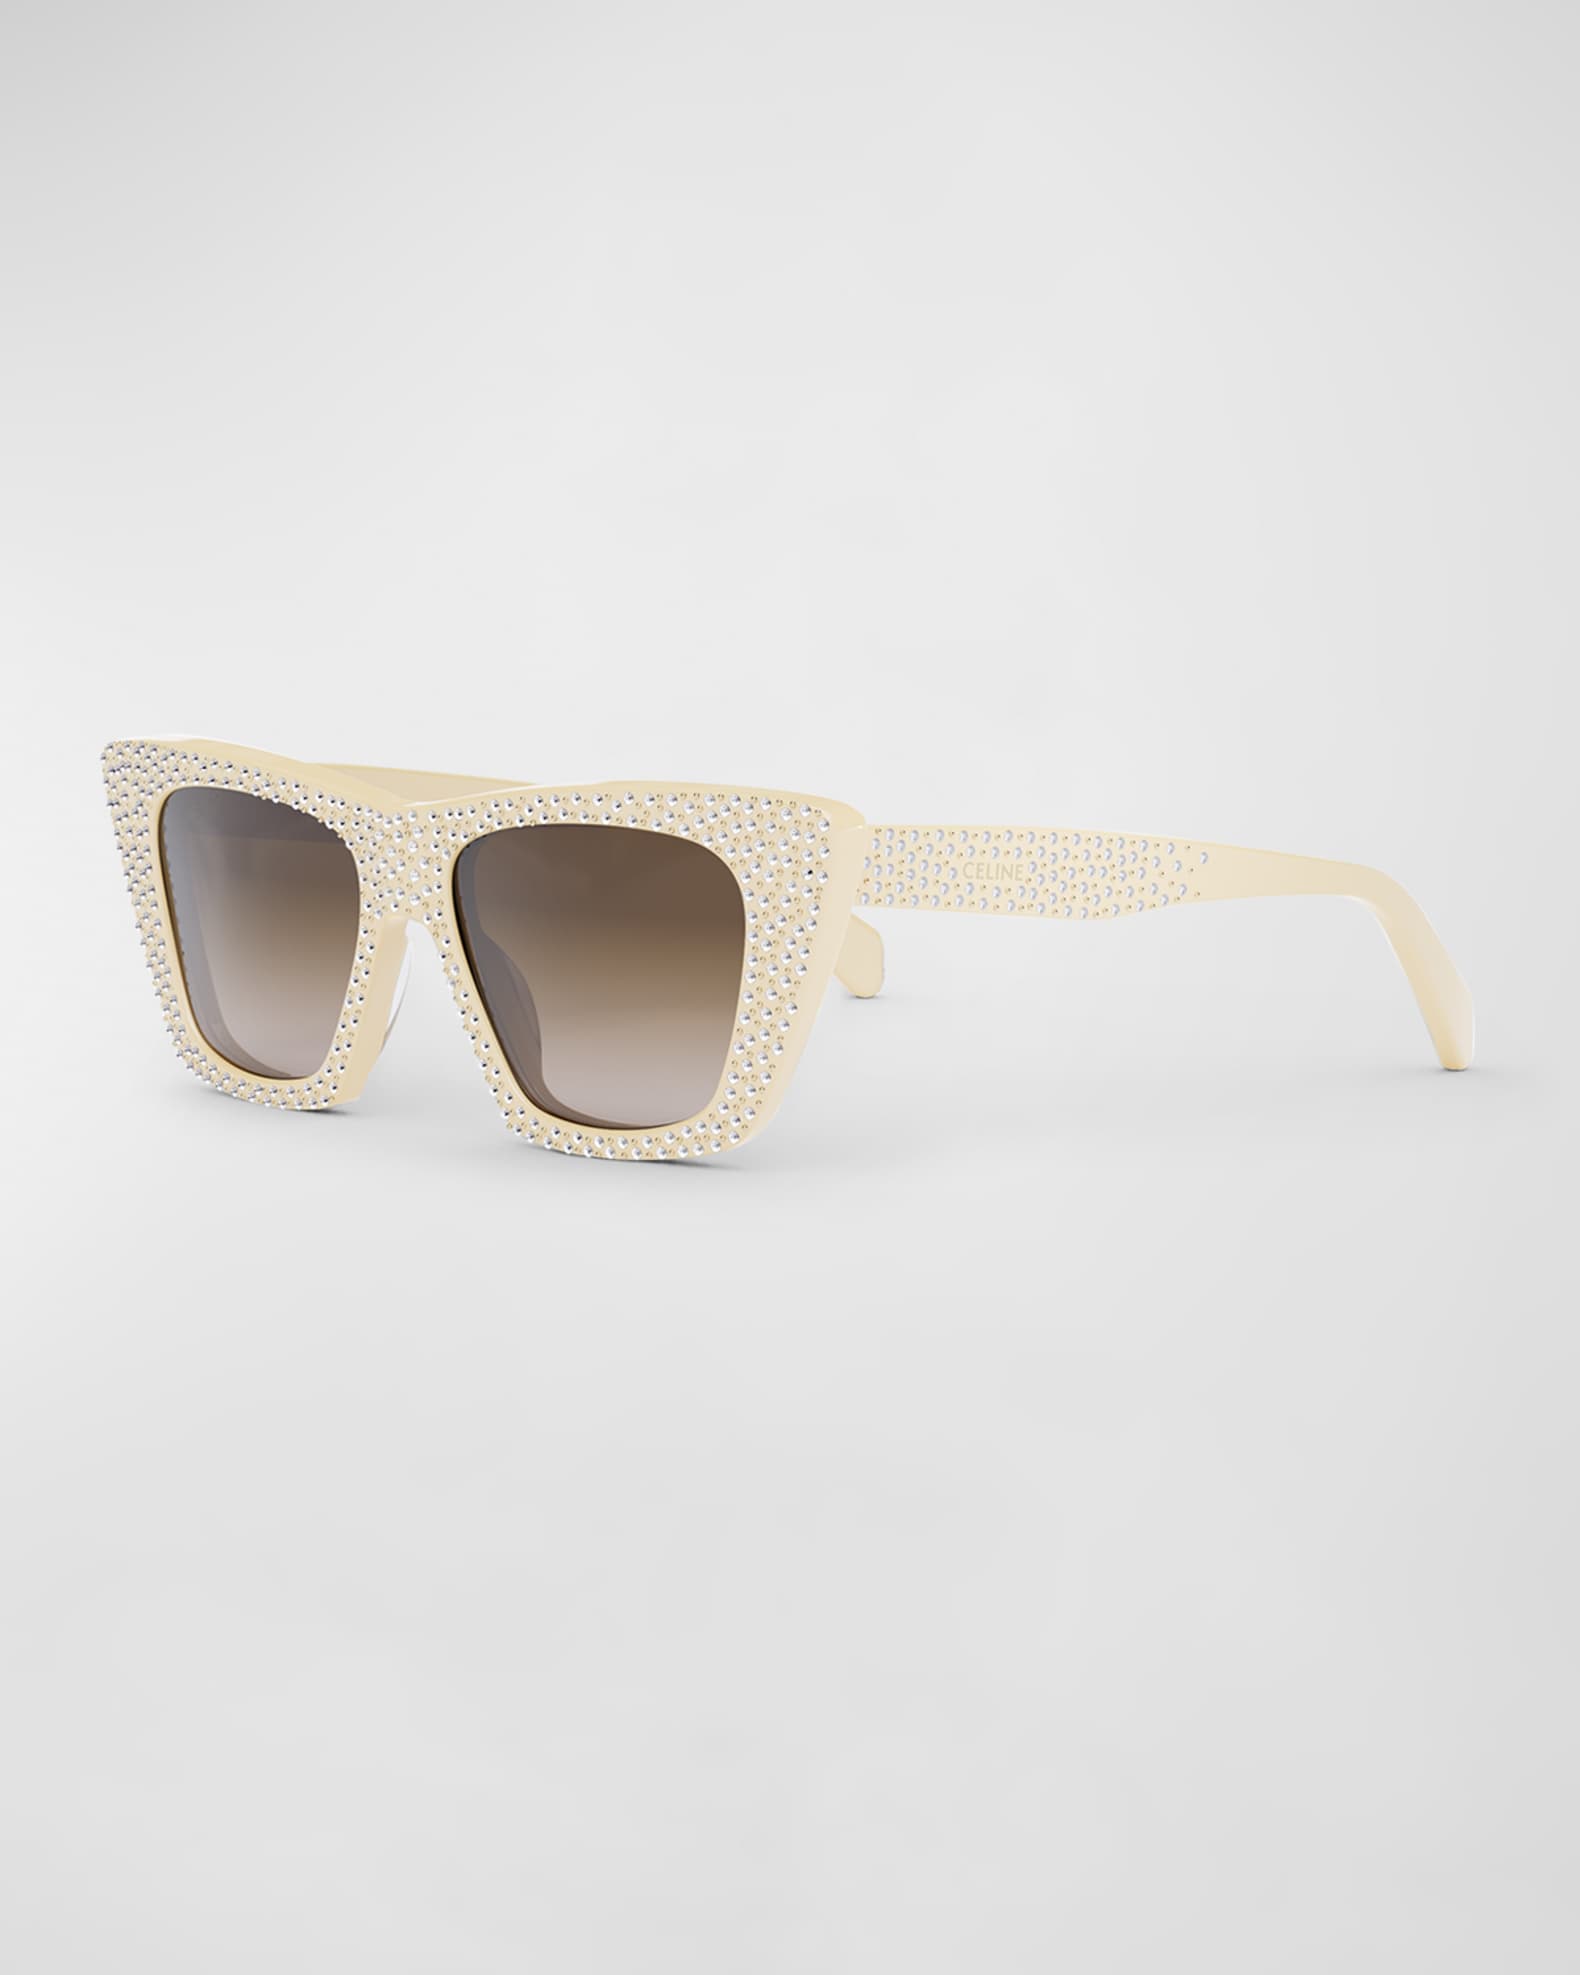 Celine Cat Eye Sunglasses, 51mm - Ivory/Brown Gradient